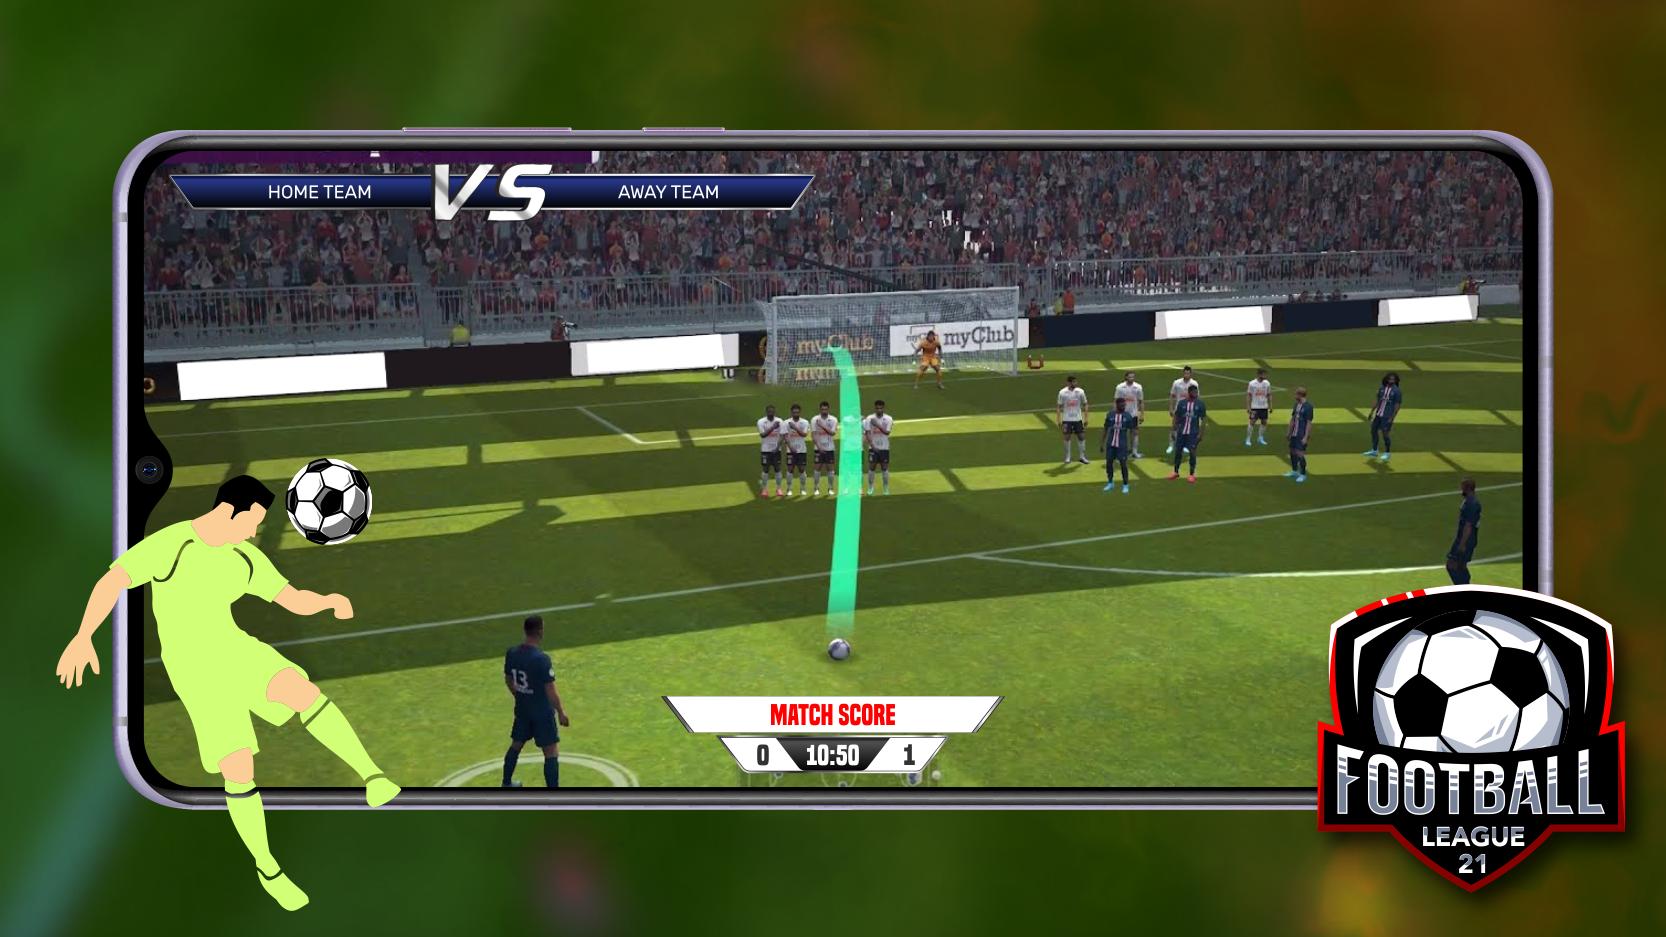 Football League 21 1.0 Screenshot 4